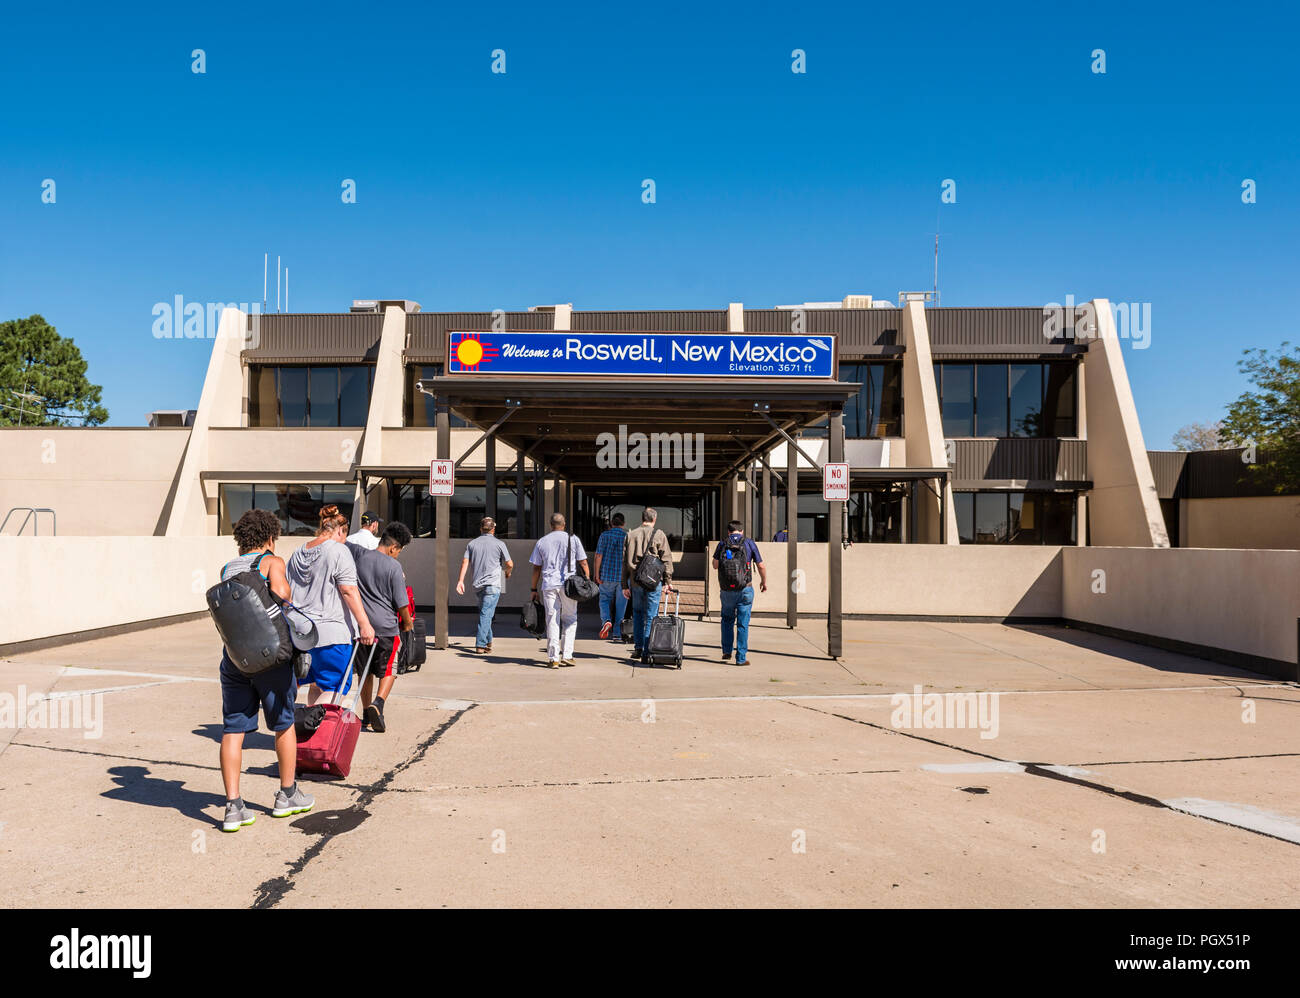 Roswell, New Mexiko, USA, Passagiere deplane außerhalb und Flughafen Terminal Gebäude unter einem Willkommen bei Roswell Zeichen eingeben. Stockfoto